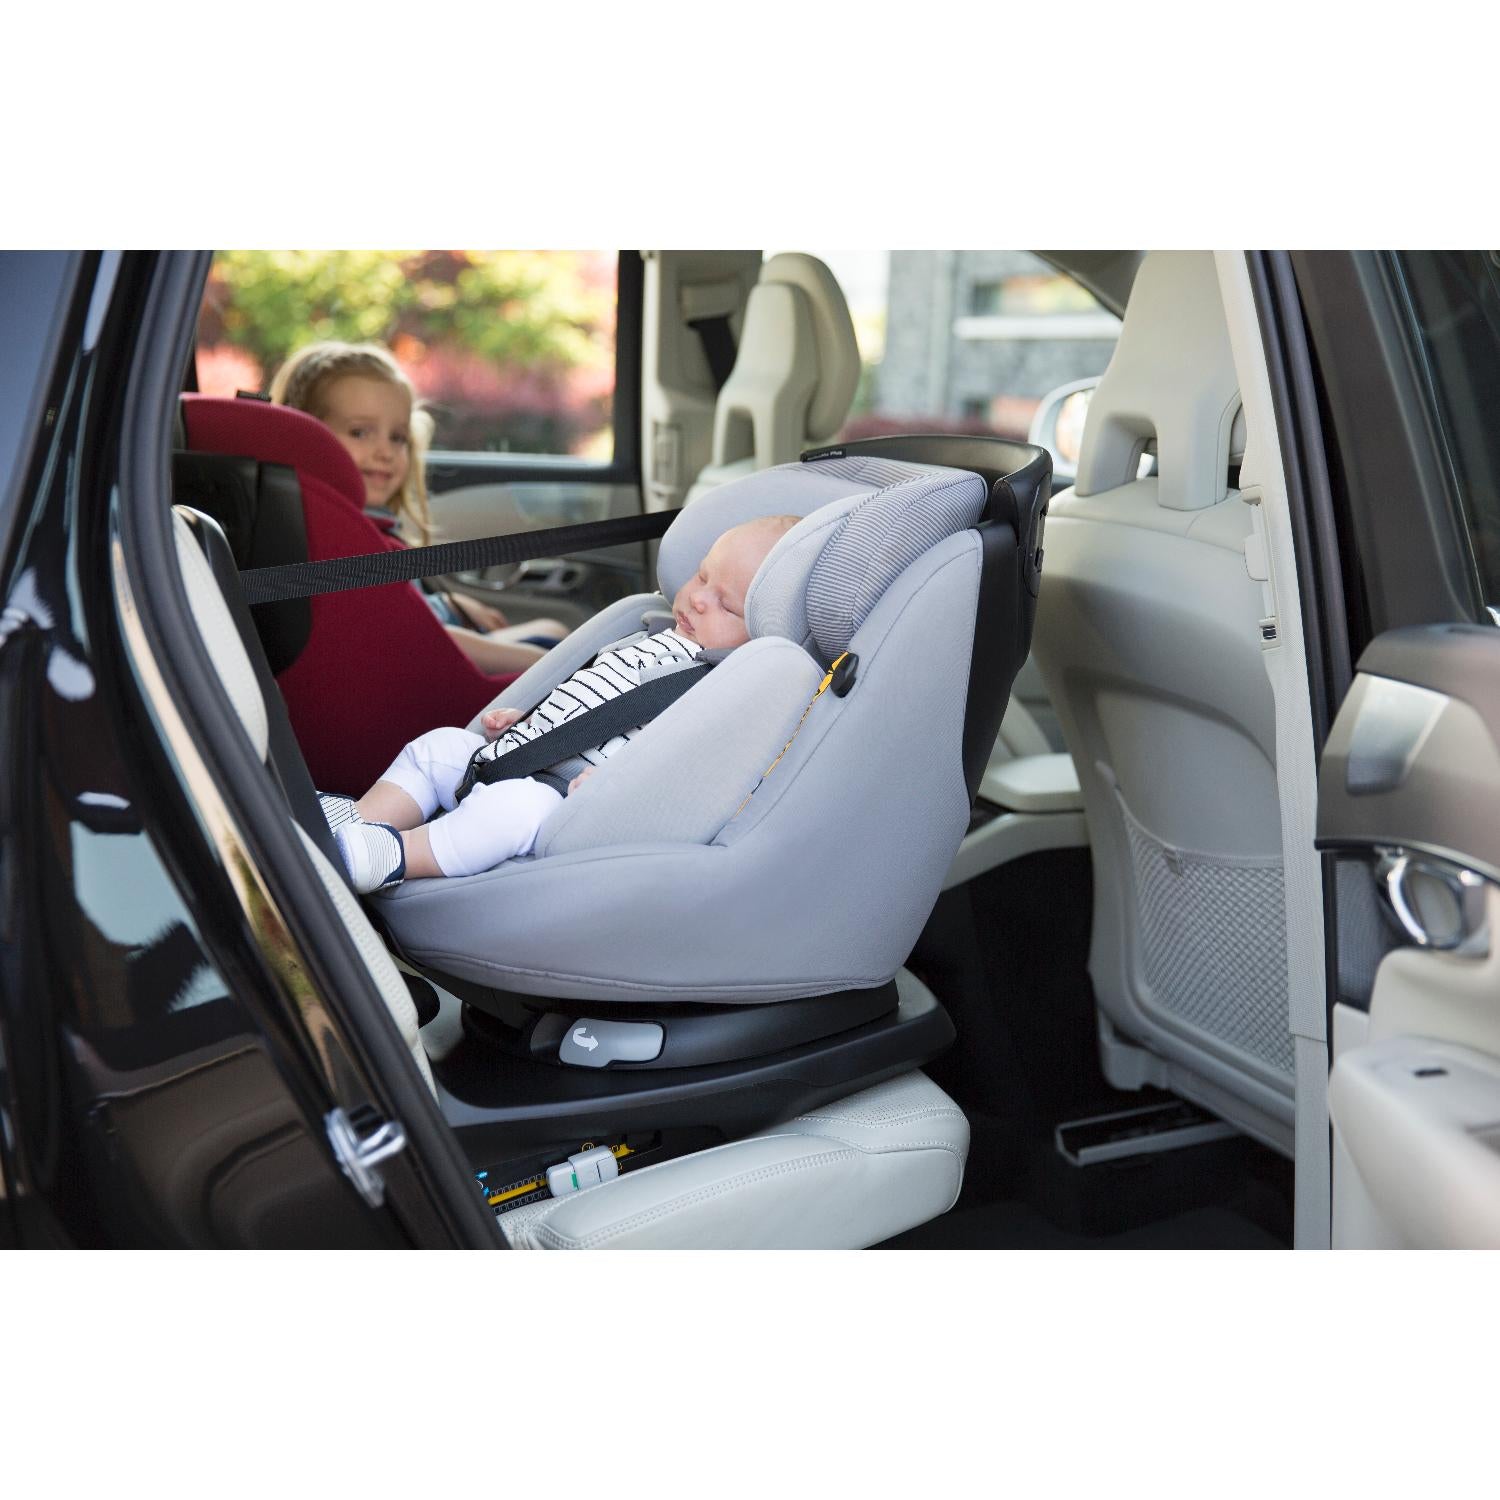 Car Seats & Bases - popular brands - Maxi Cosi Axissfix Plus